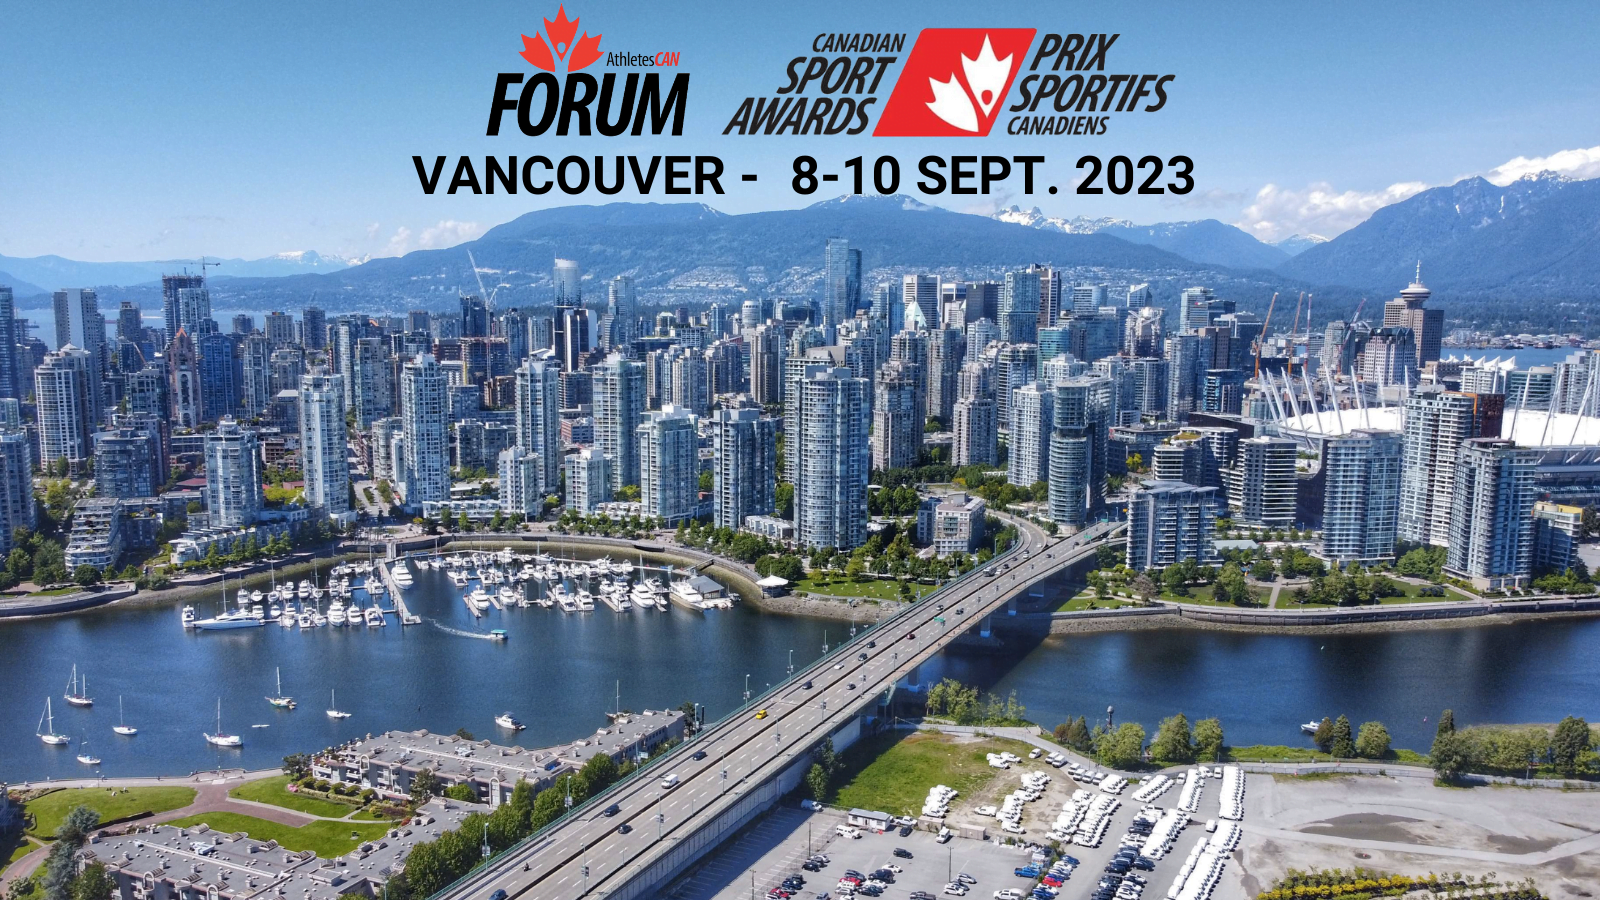 Forum d'AthlètesCAN 2023 et les Prix sportifs canadiens, le 8-10 septembre, Vancouver